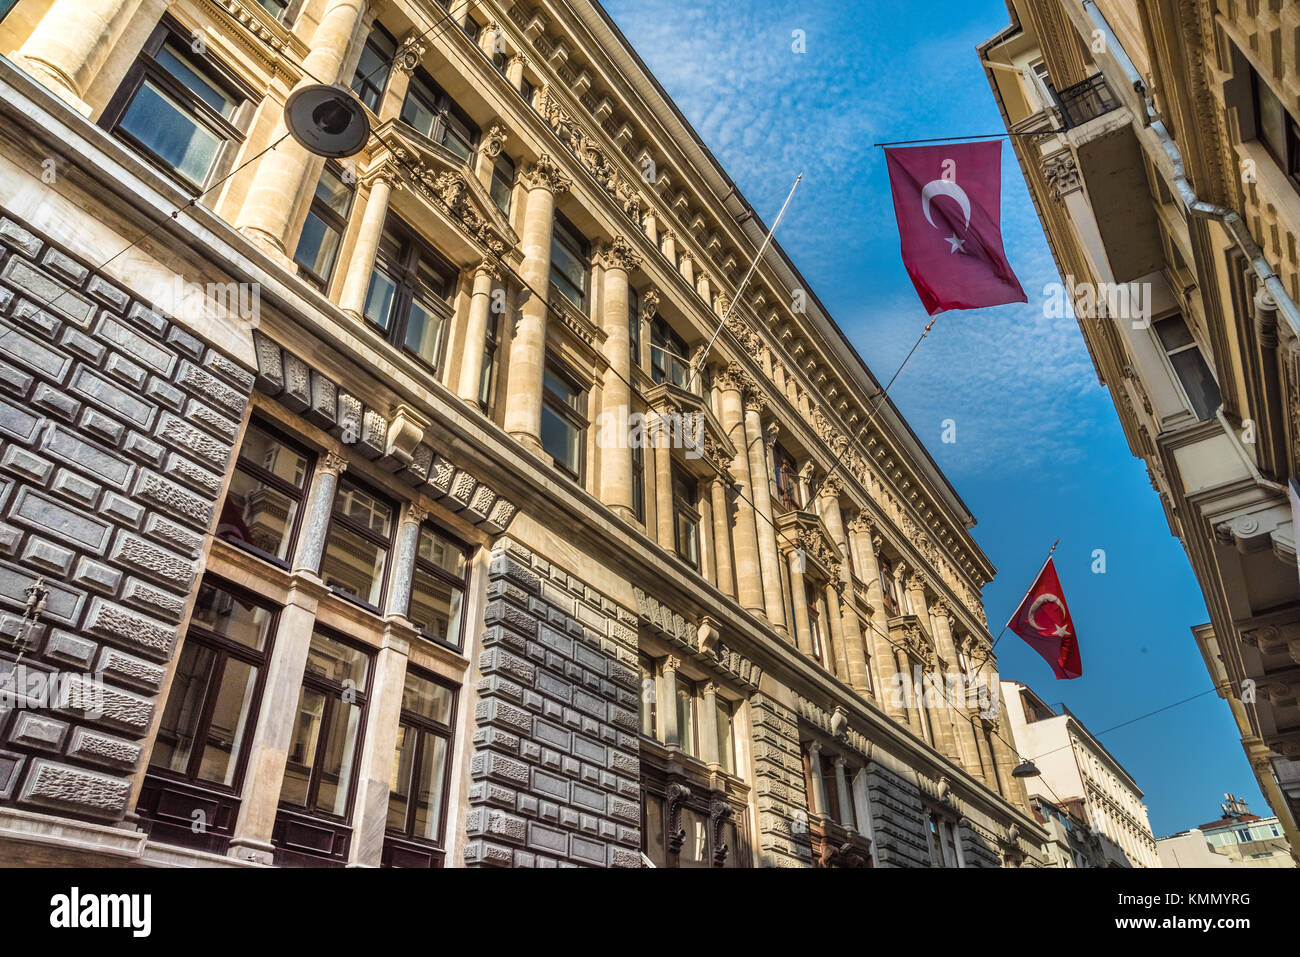 Brandissant des drapeaux turcs et suspendus sur un bâtiment ancien en pierre.ISTANBUL, TURQUIE, le 22 avril, 2017 Banque D'Images